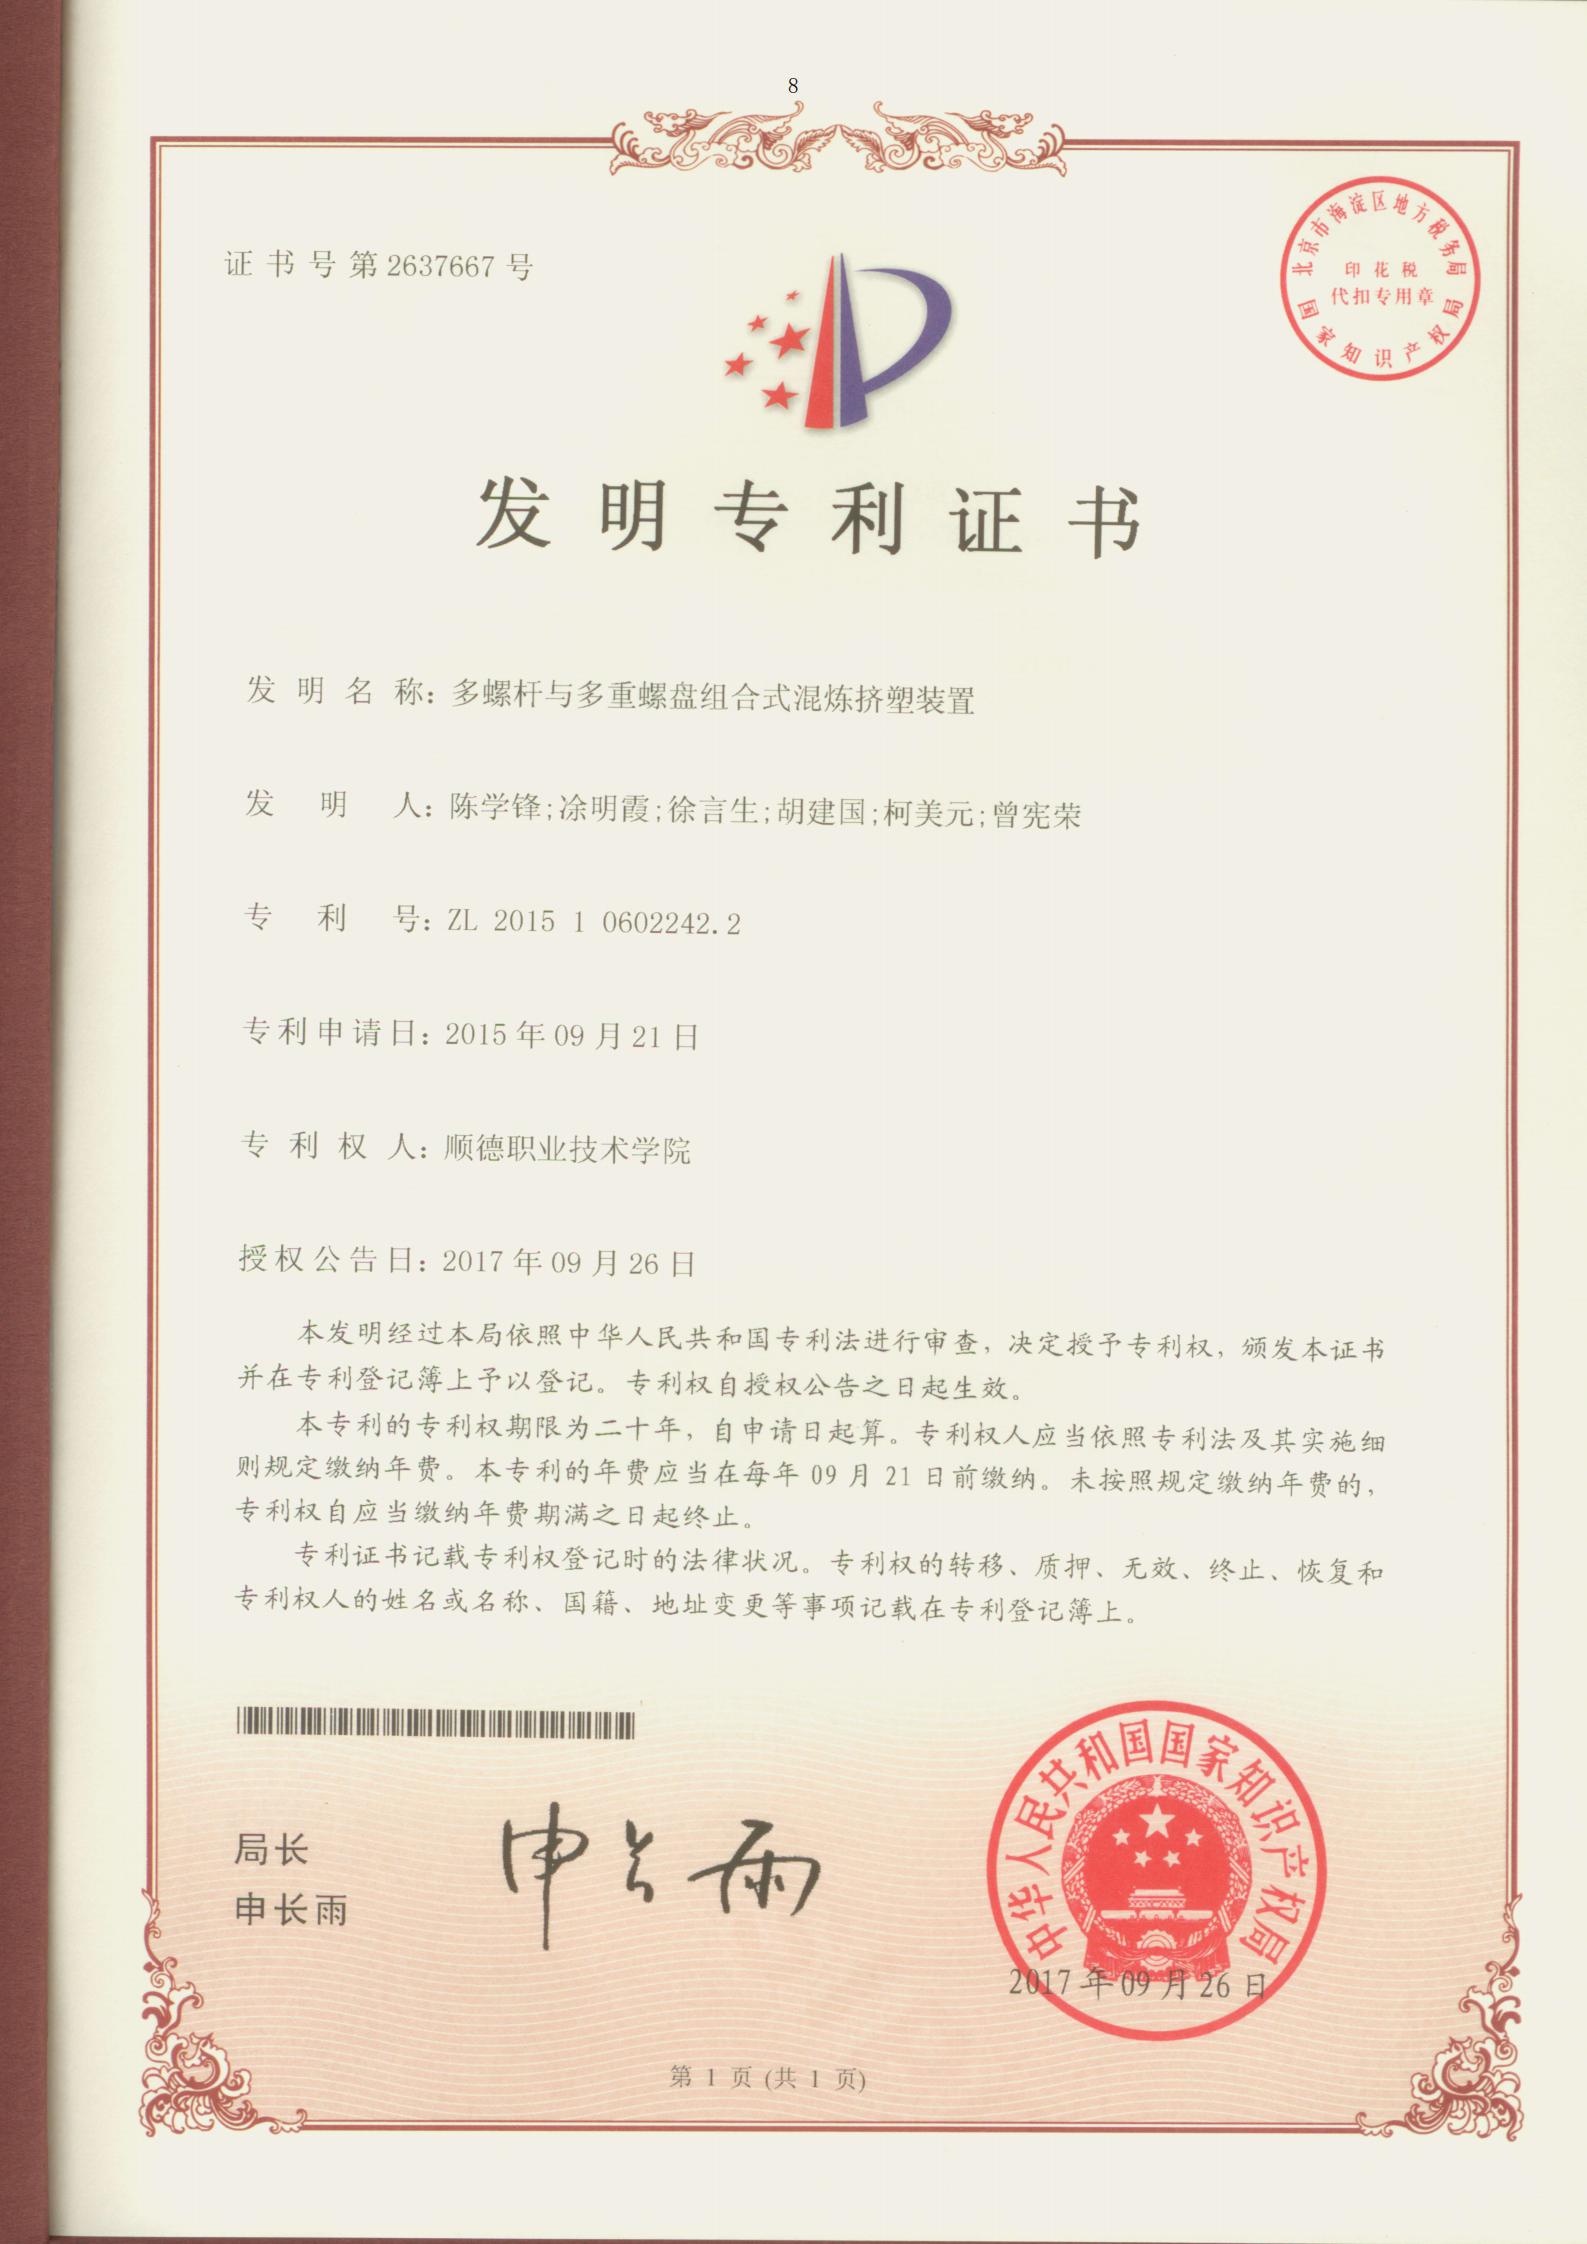 9.多螺杆与多重螺盘组合式混炼挤塑装置-中国发明专利证书_00.jpg